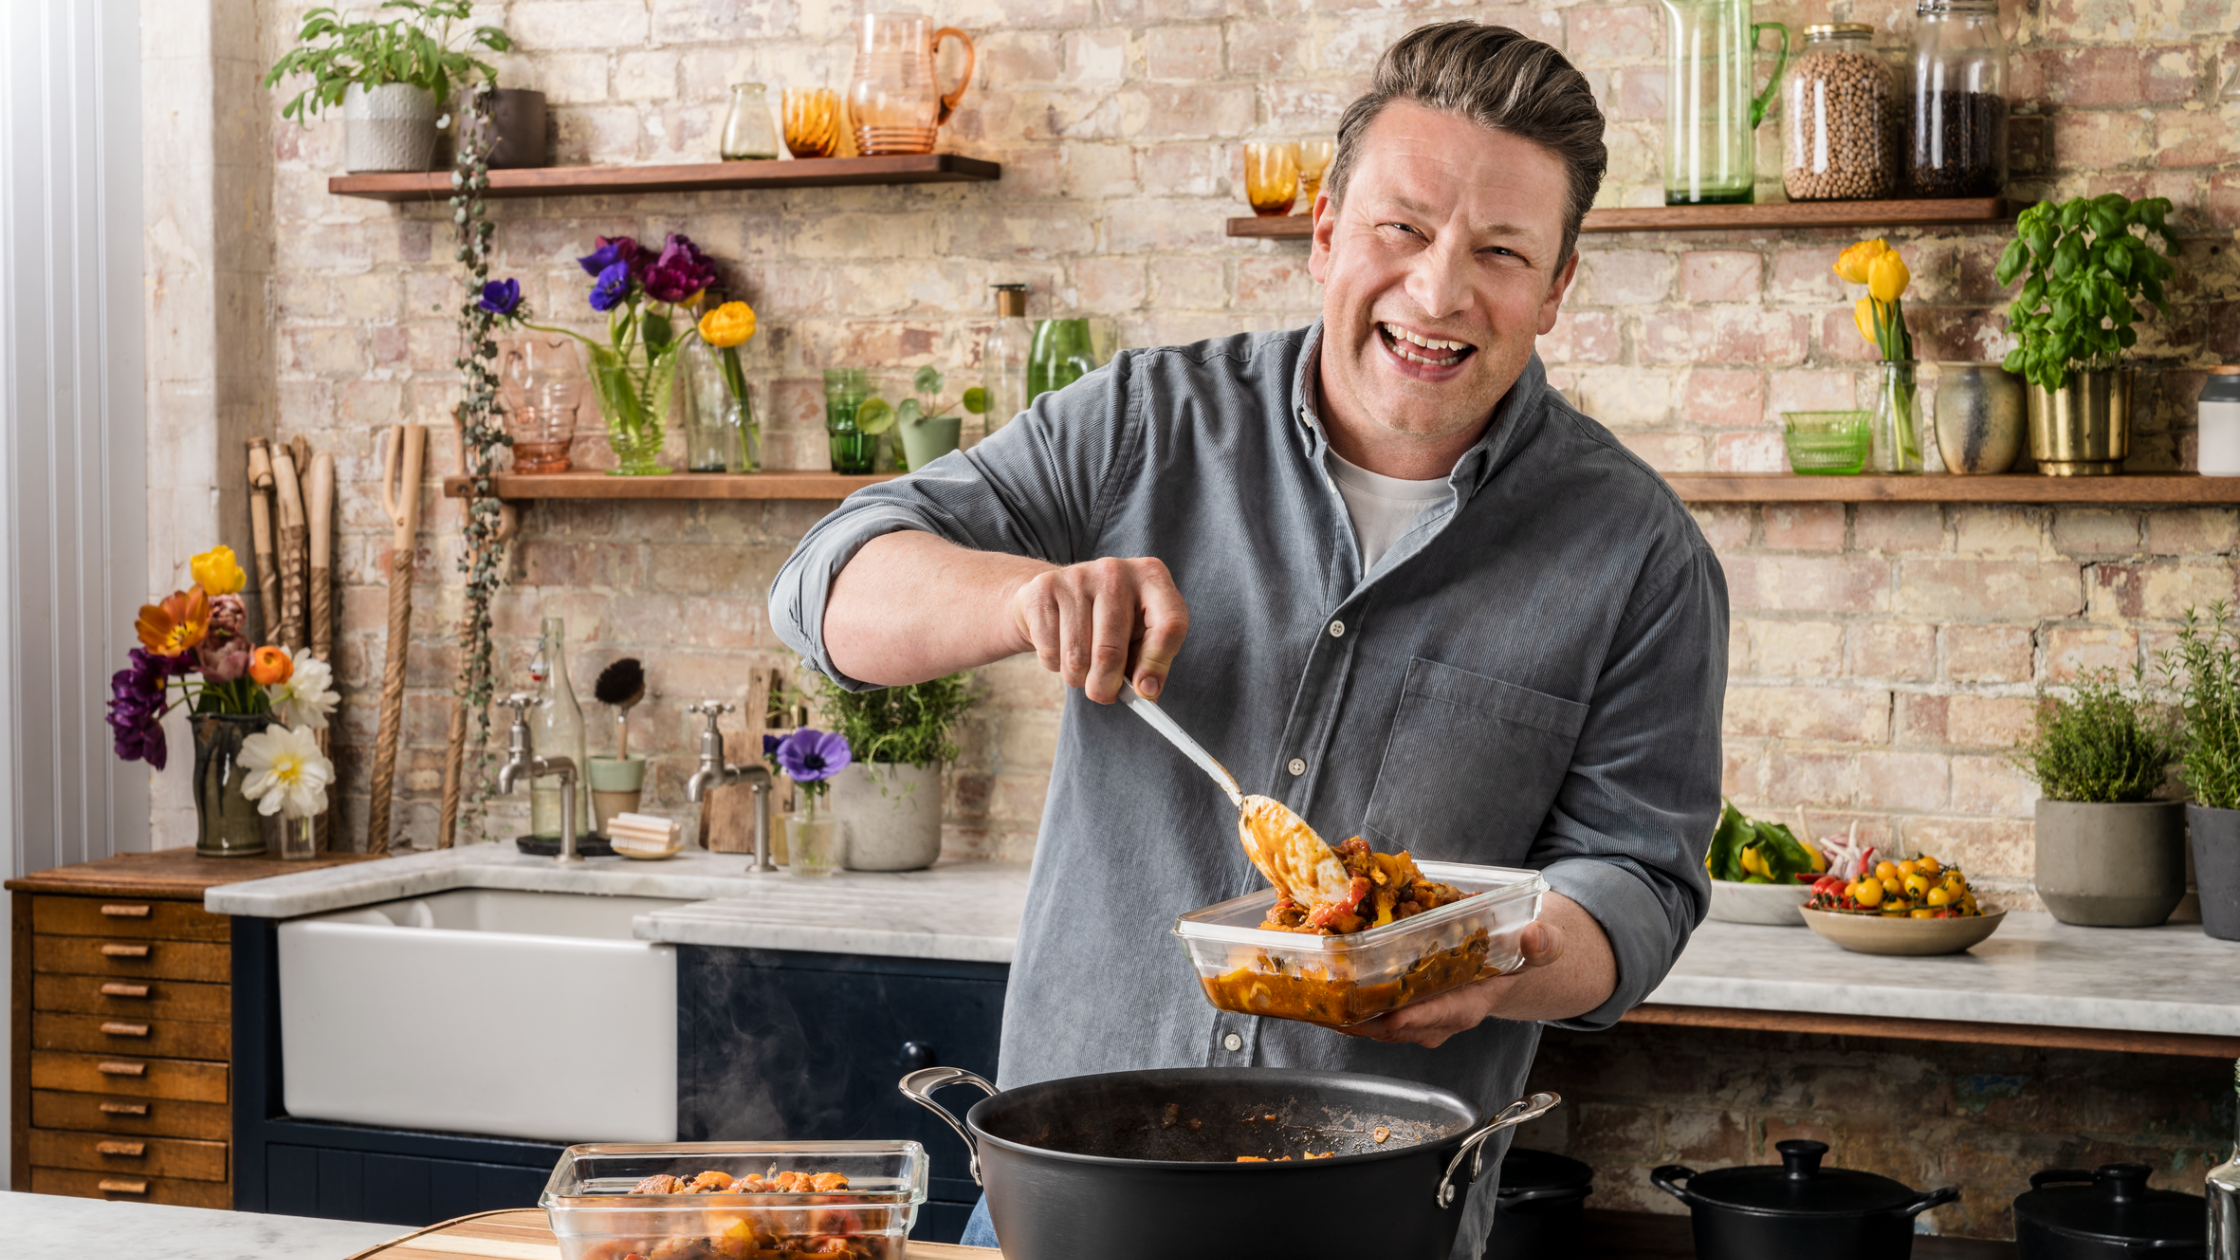 Jamie Oliver’s simple 5-ingredient midweek meals